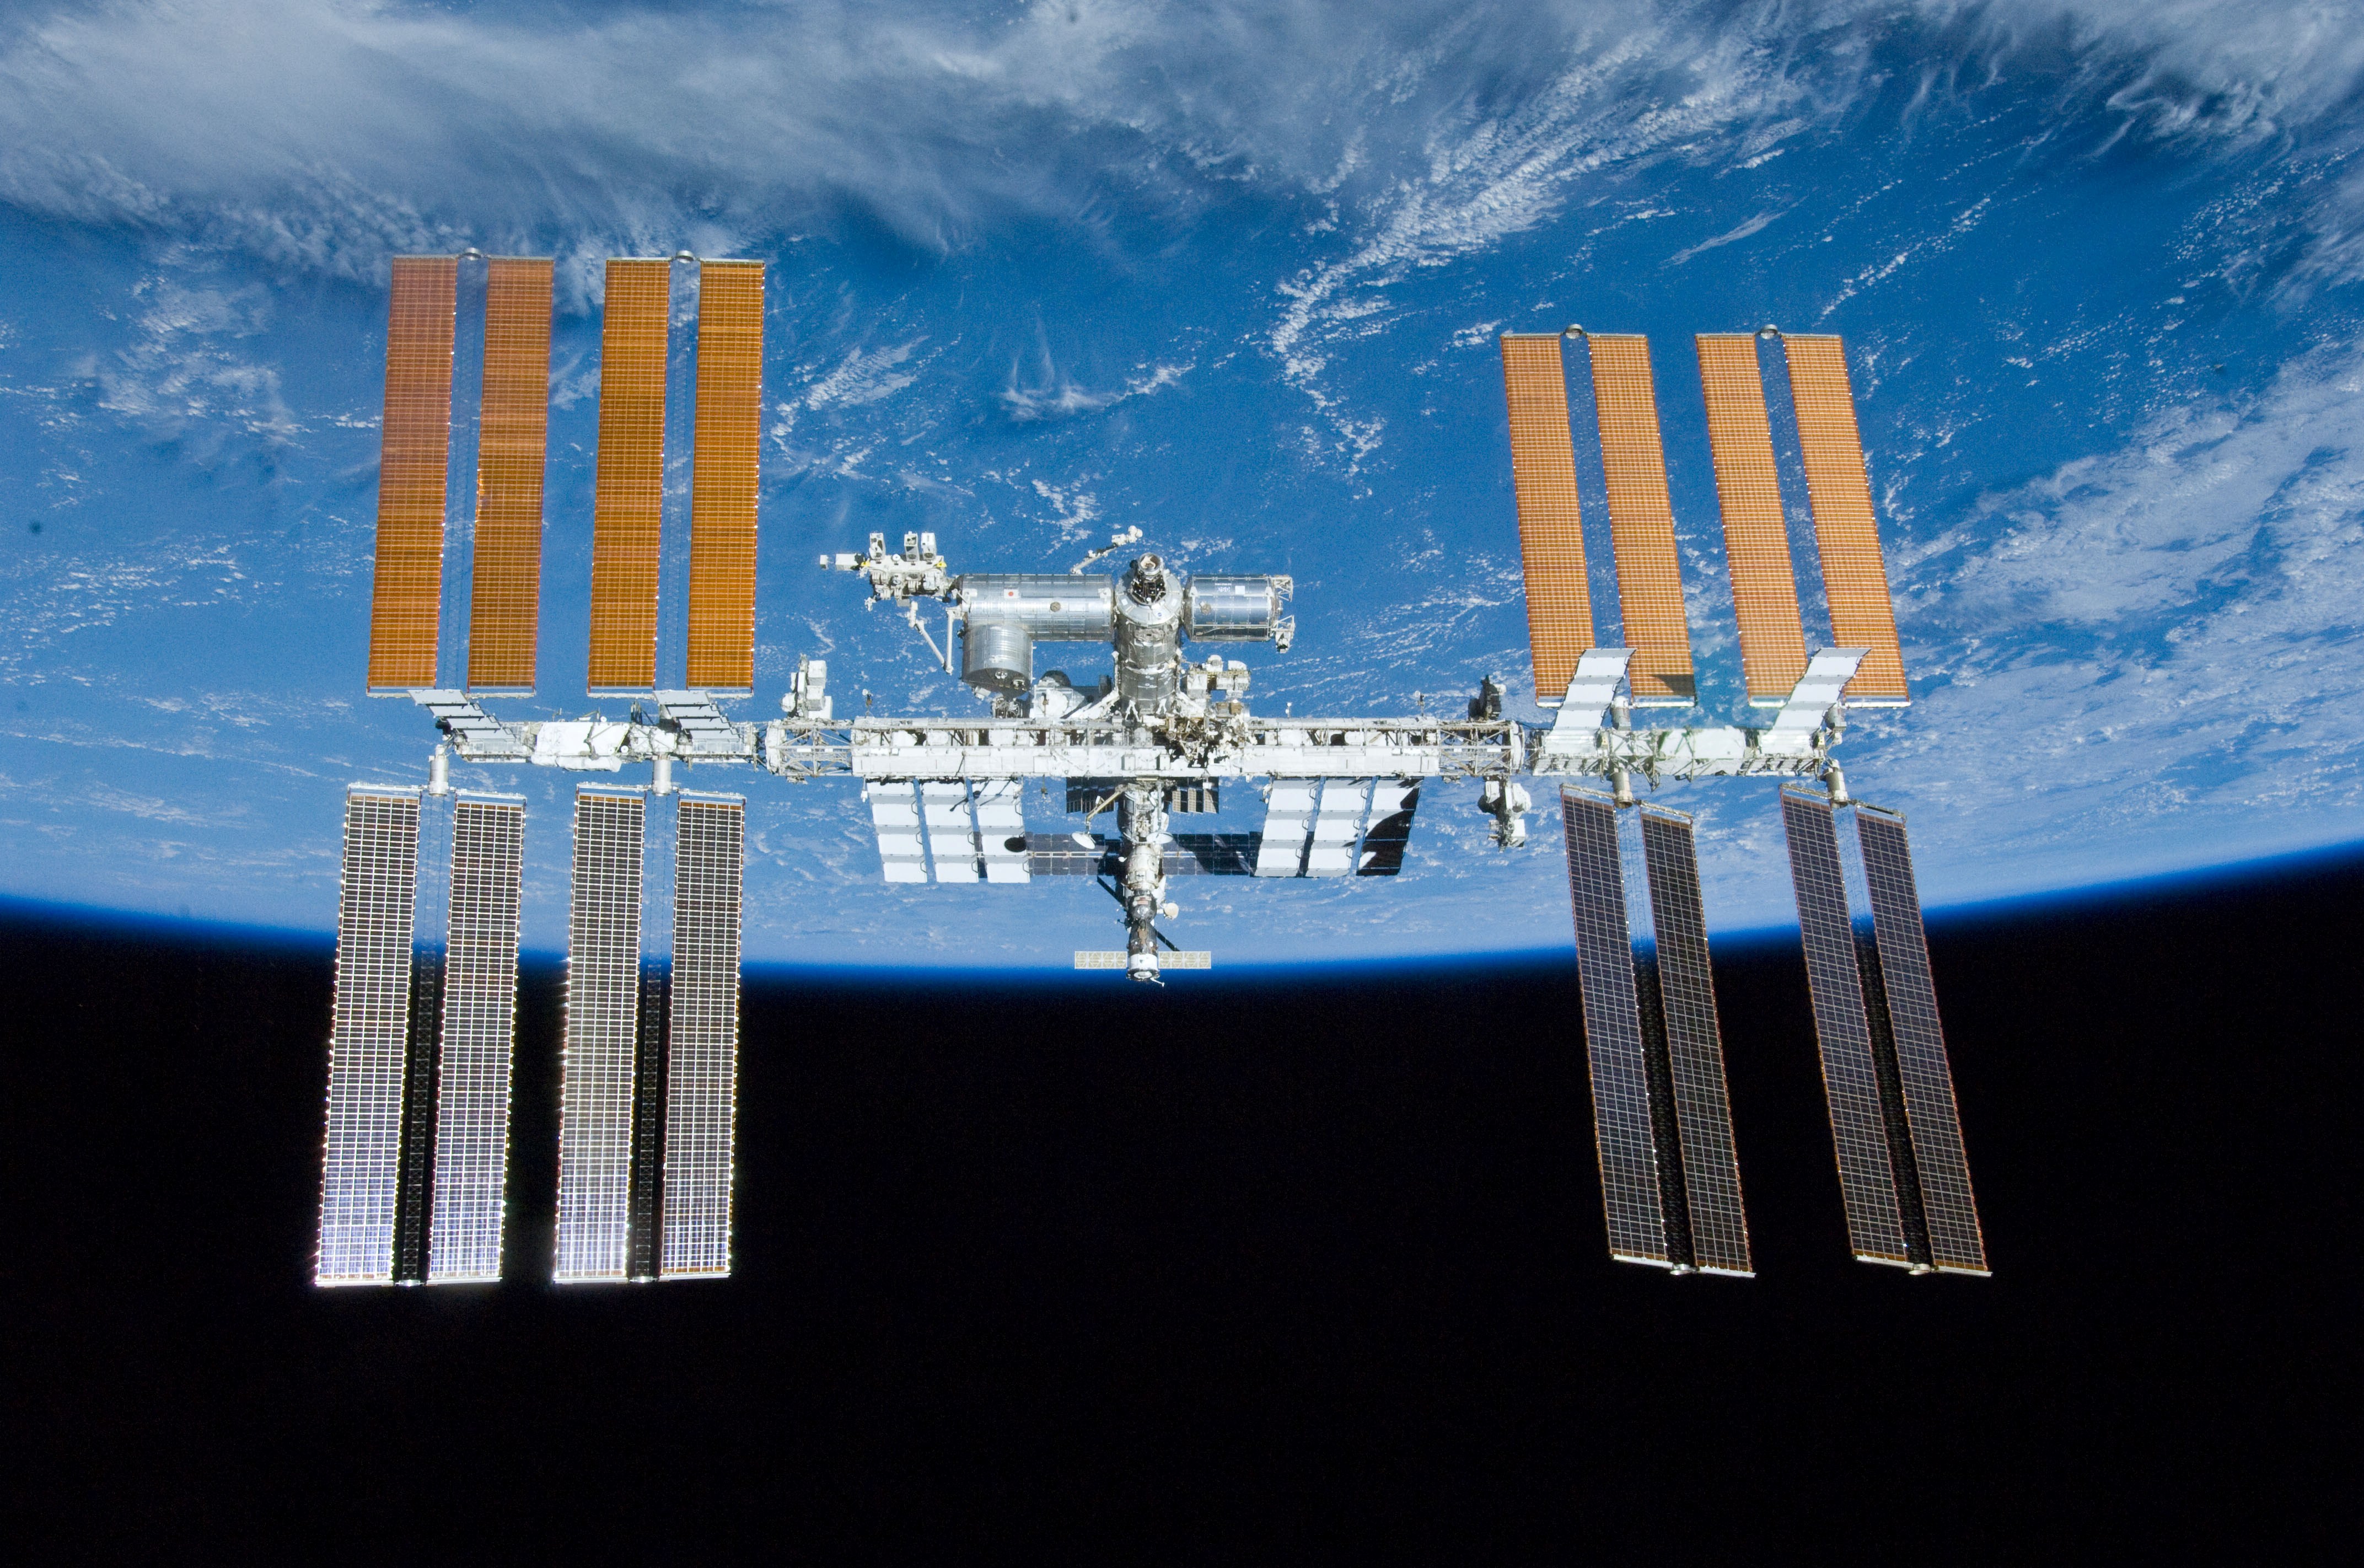 La Estación Espacial Internacional podrá ser observada esta noche en la región. (Gentileza).-